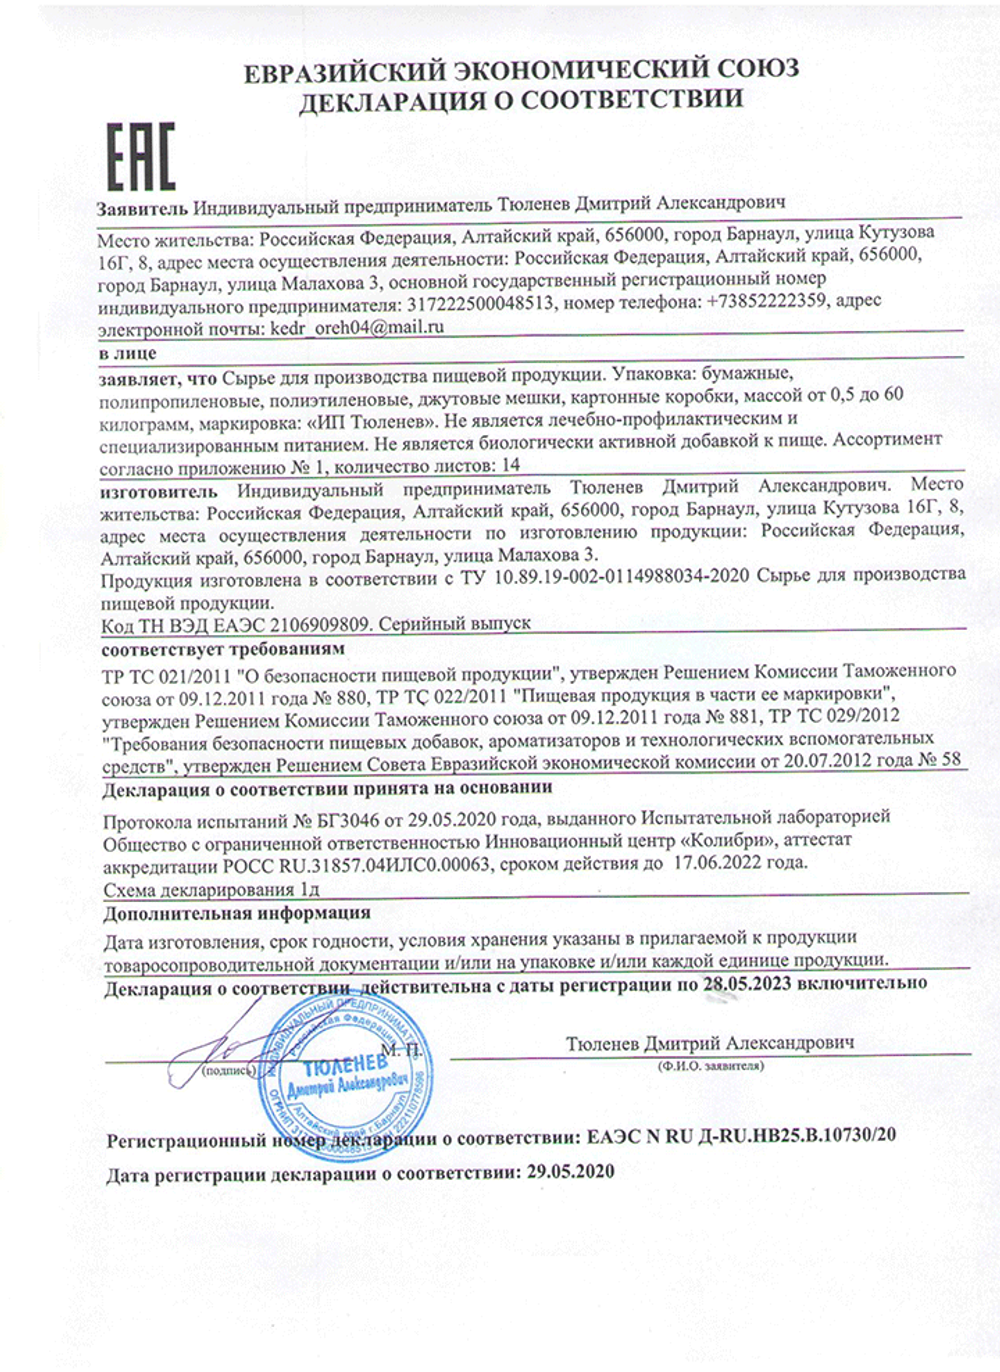 Изображение сертификата соответствия створок фасоли-adonnis.ru